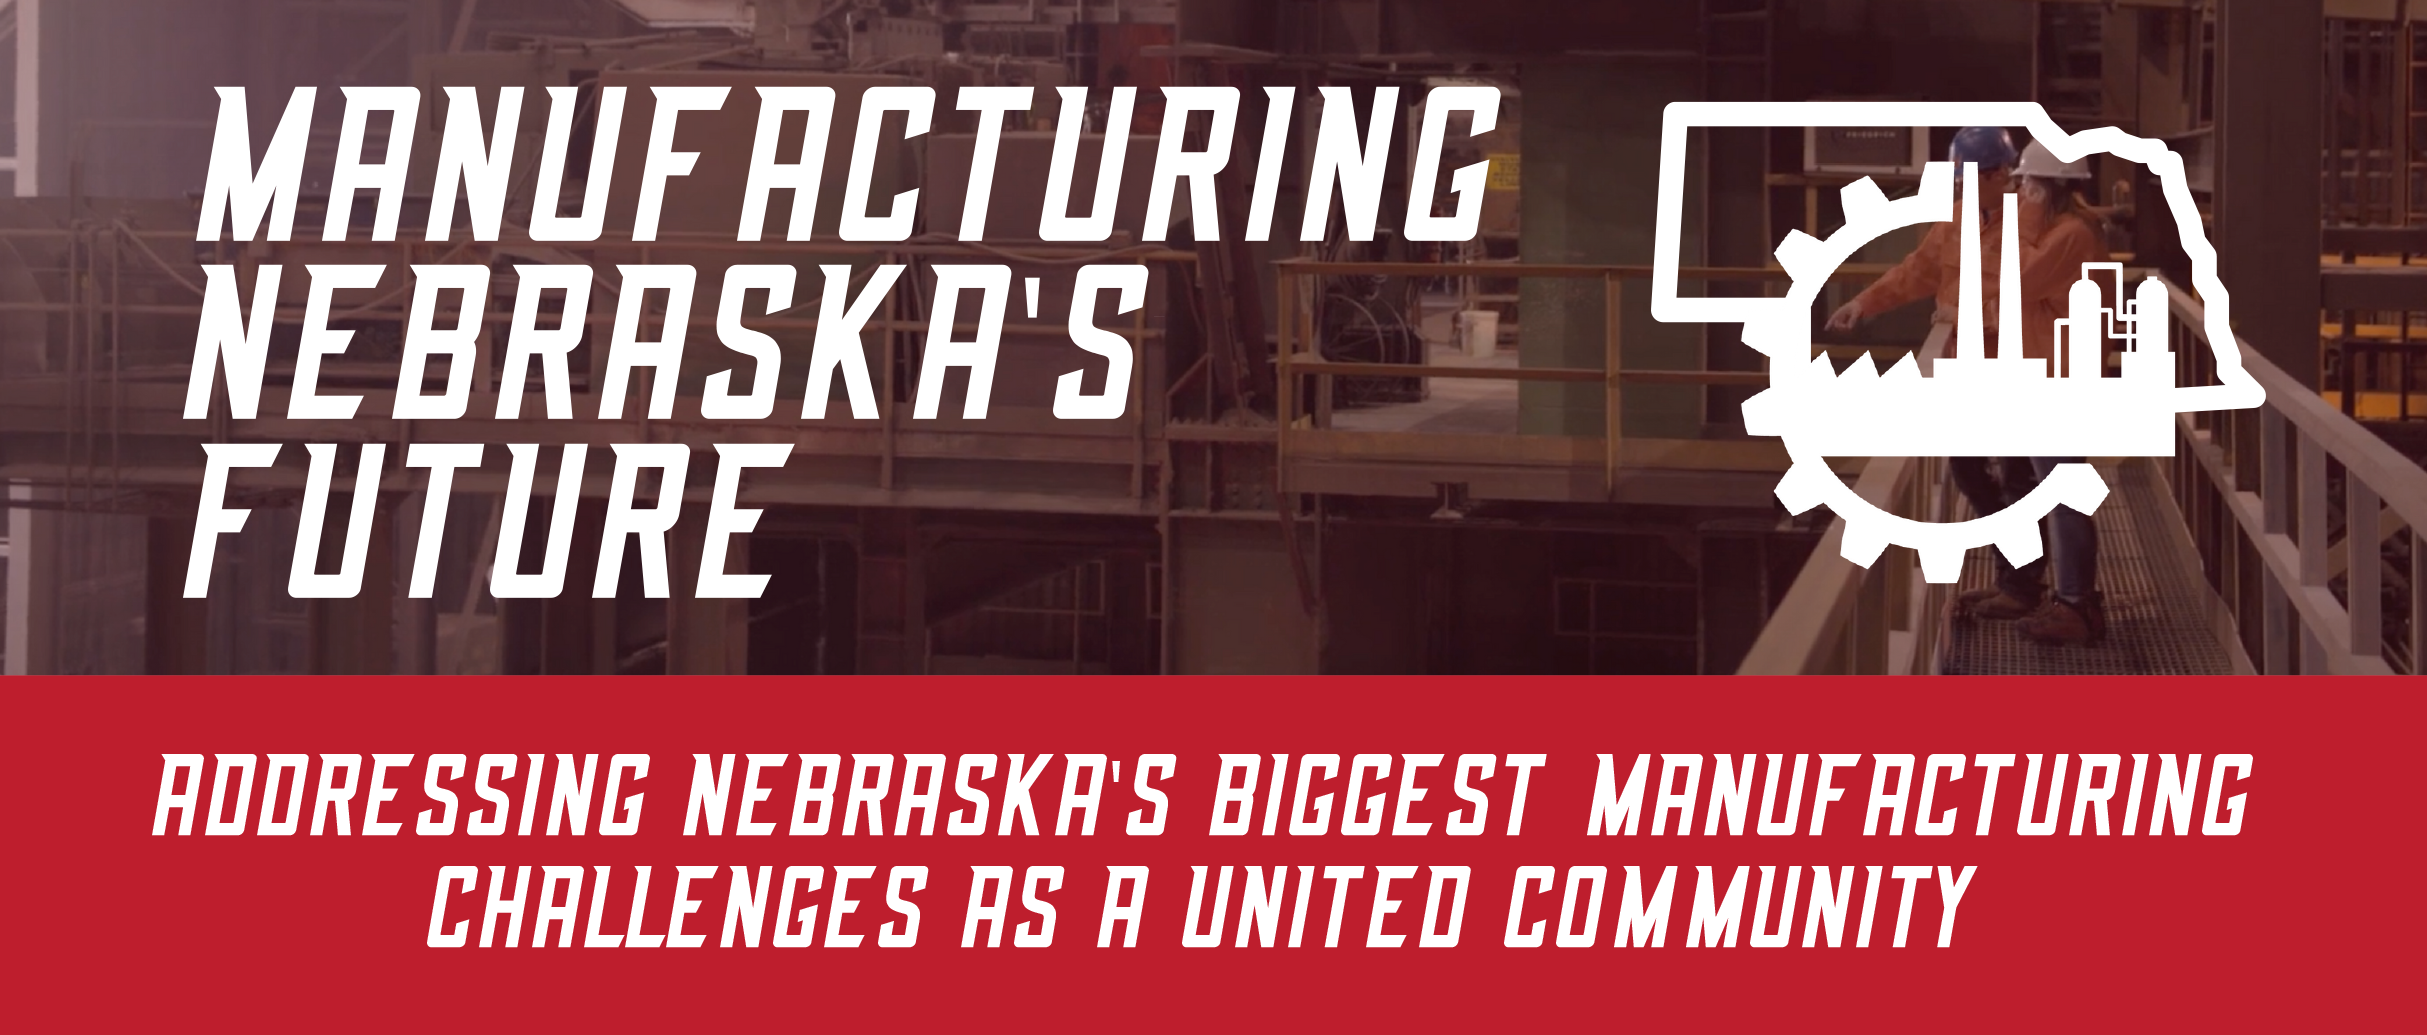 Manufacturing Nebraska's Future